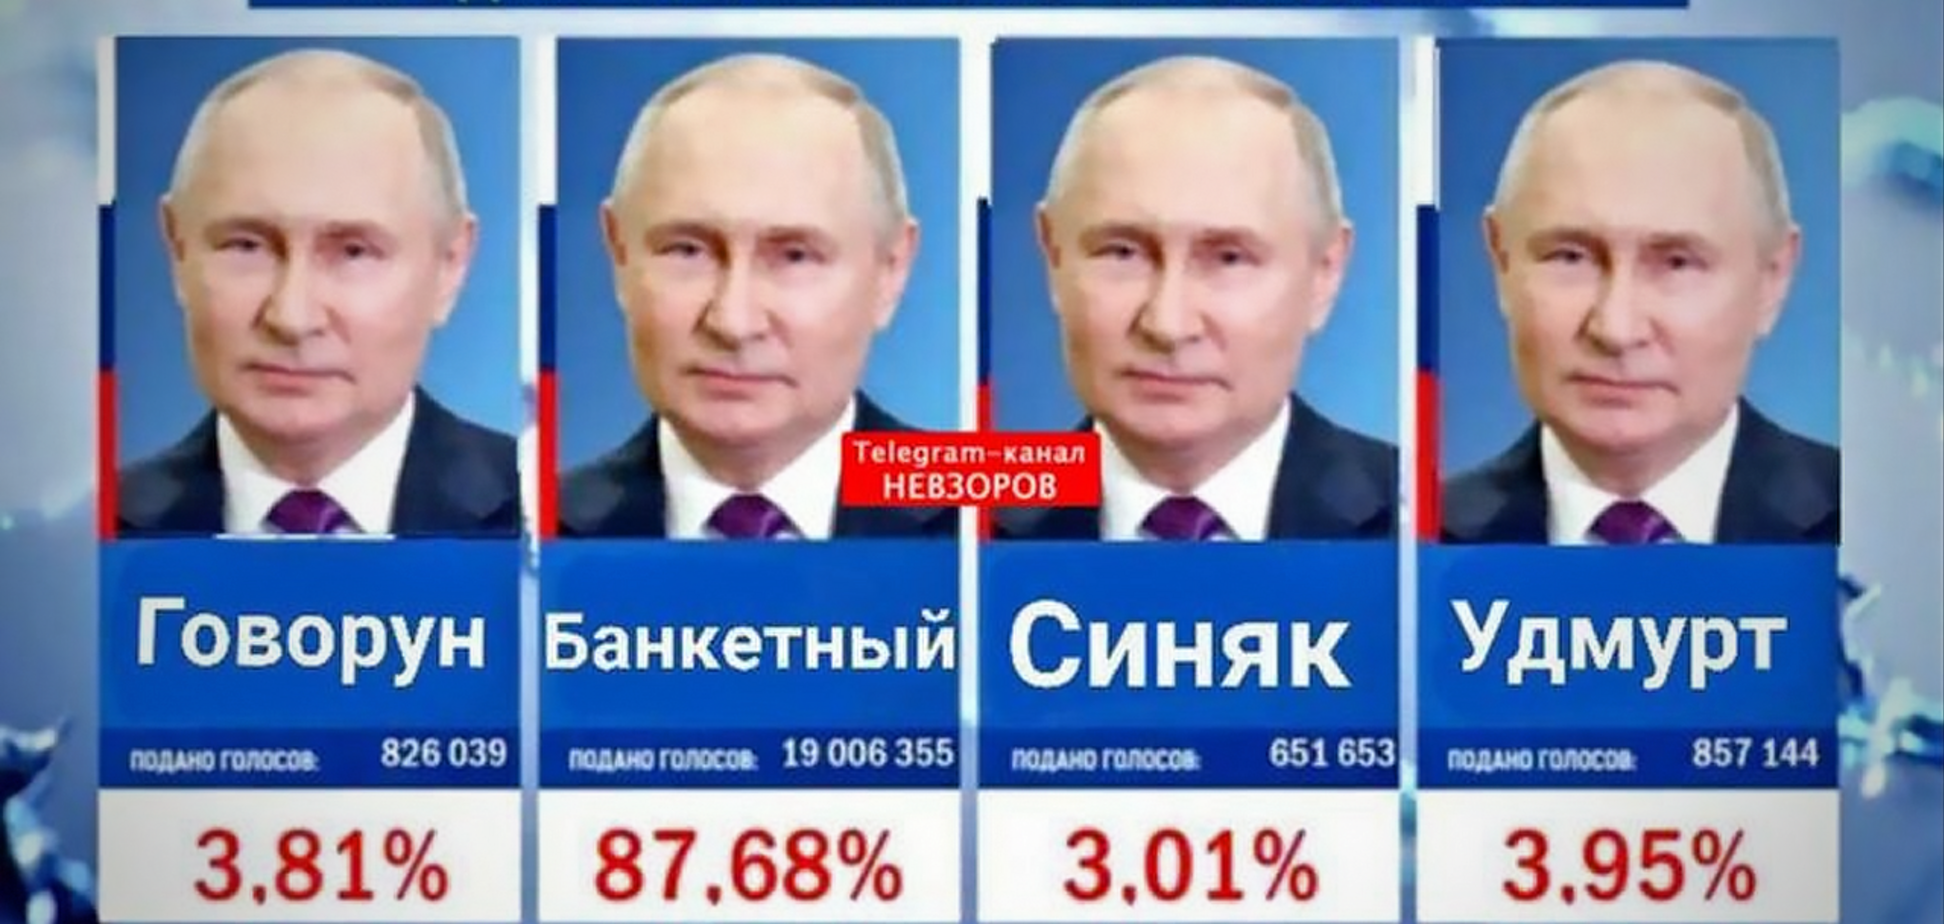 Кого выбрала Россия? Двойники Путина